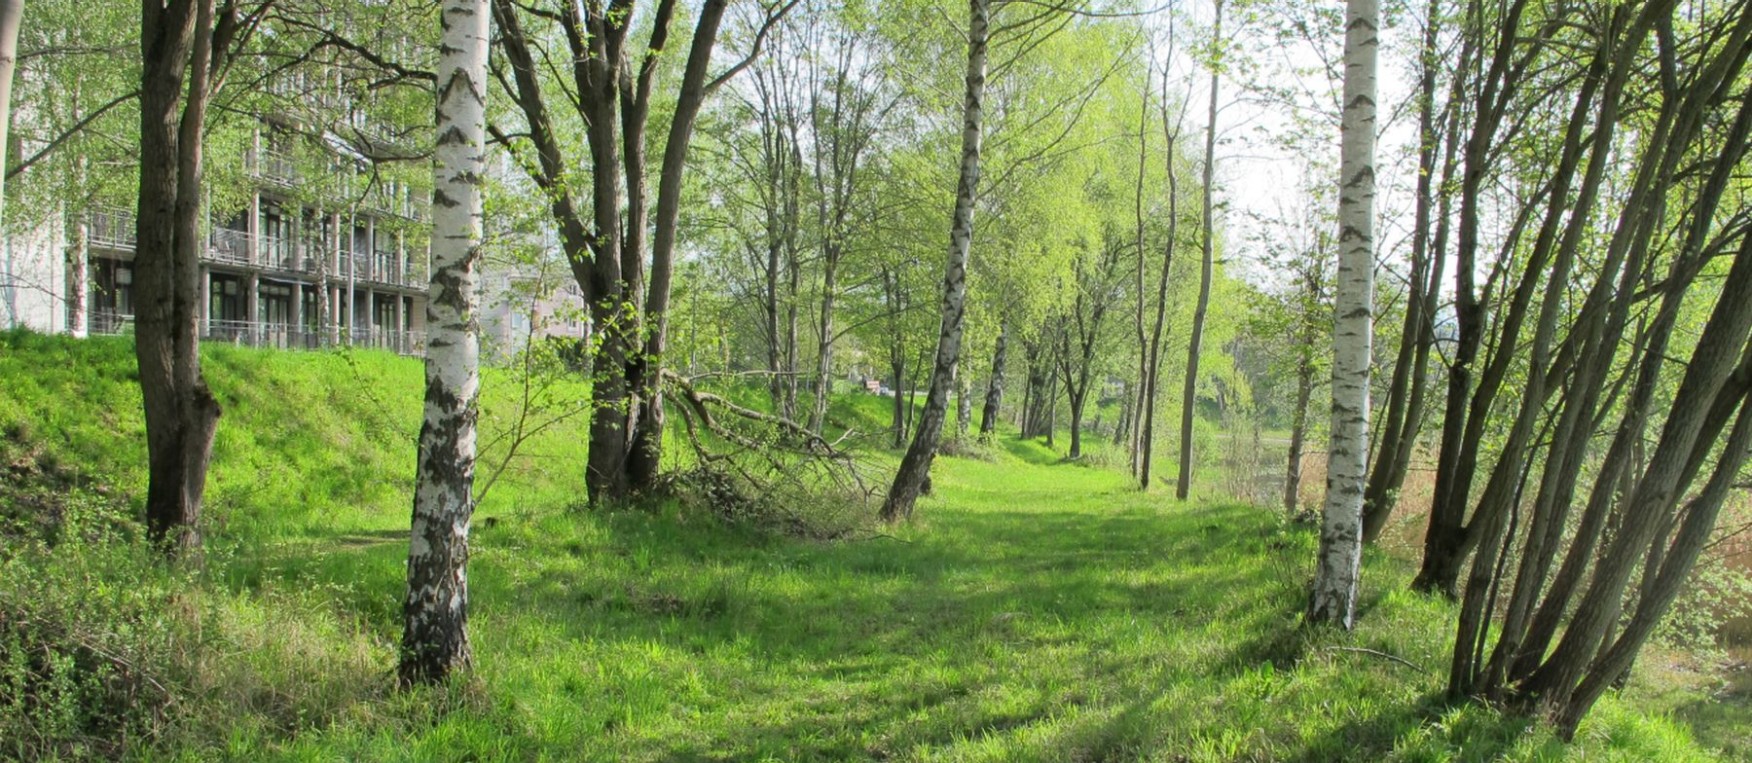 Lichter Birkenwald im Naturschutzgebiet Binz